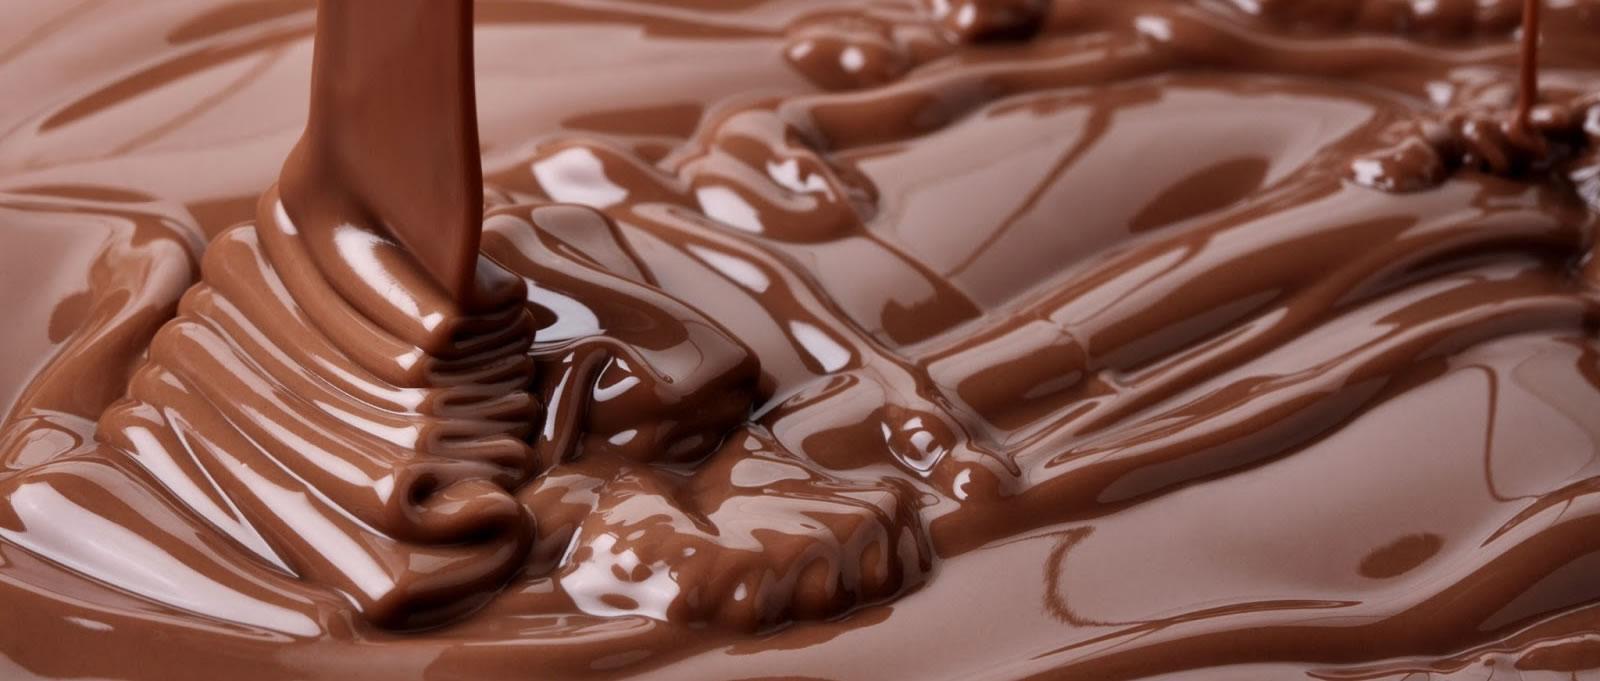 सेहत के लिए लाभकारी है चॉकलेट का सेवन करना